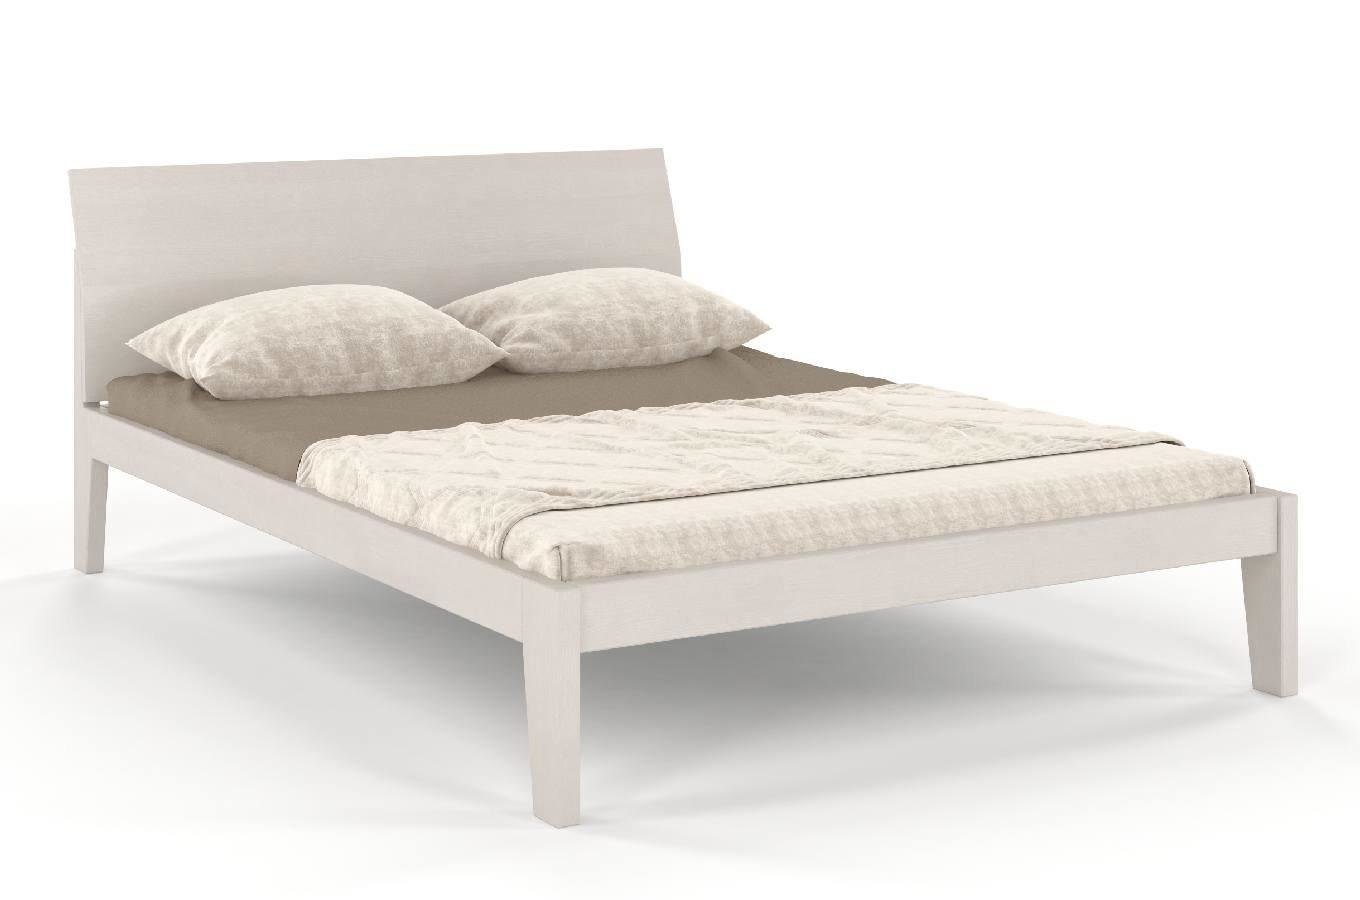 Łóżko drewniane sosnowe Skandica AGAVA / 120x200 cm, kolor biały